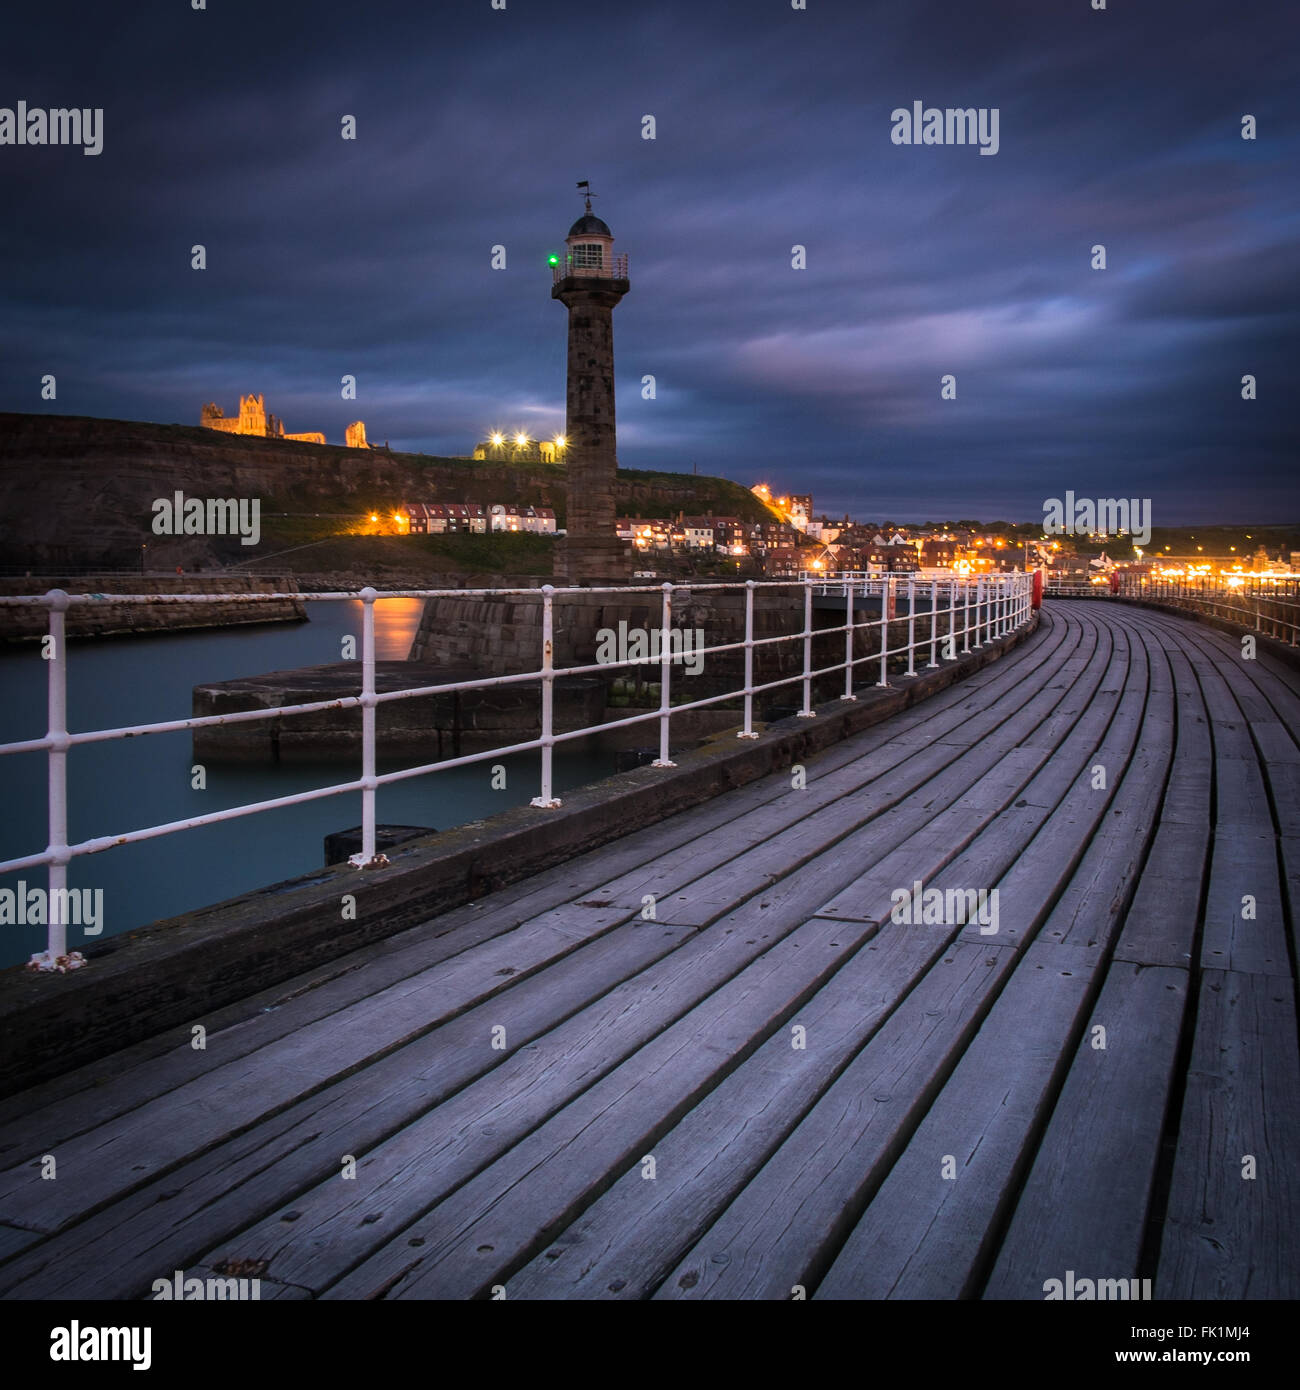 Fotografía nocturna mirando las luces de Whitby en Yorkshire del Norte Costa del West Pier extension Foto de stock